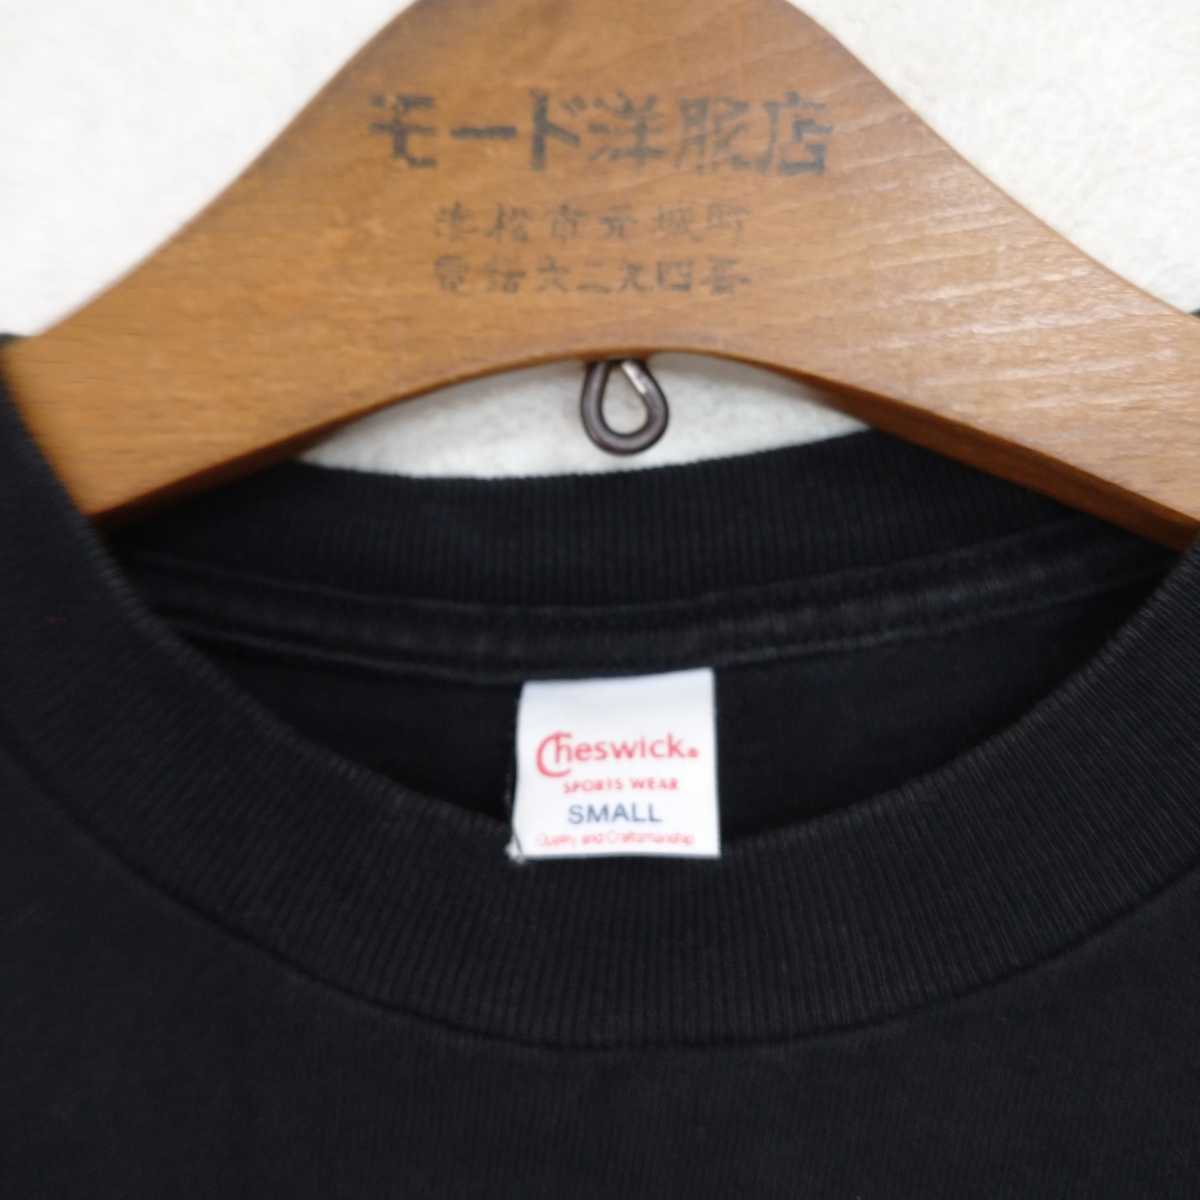 カナダ製 東洋Cheswick ポケT ポケットTシャツ 黒S